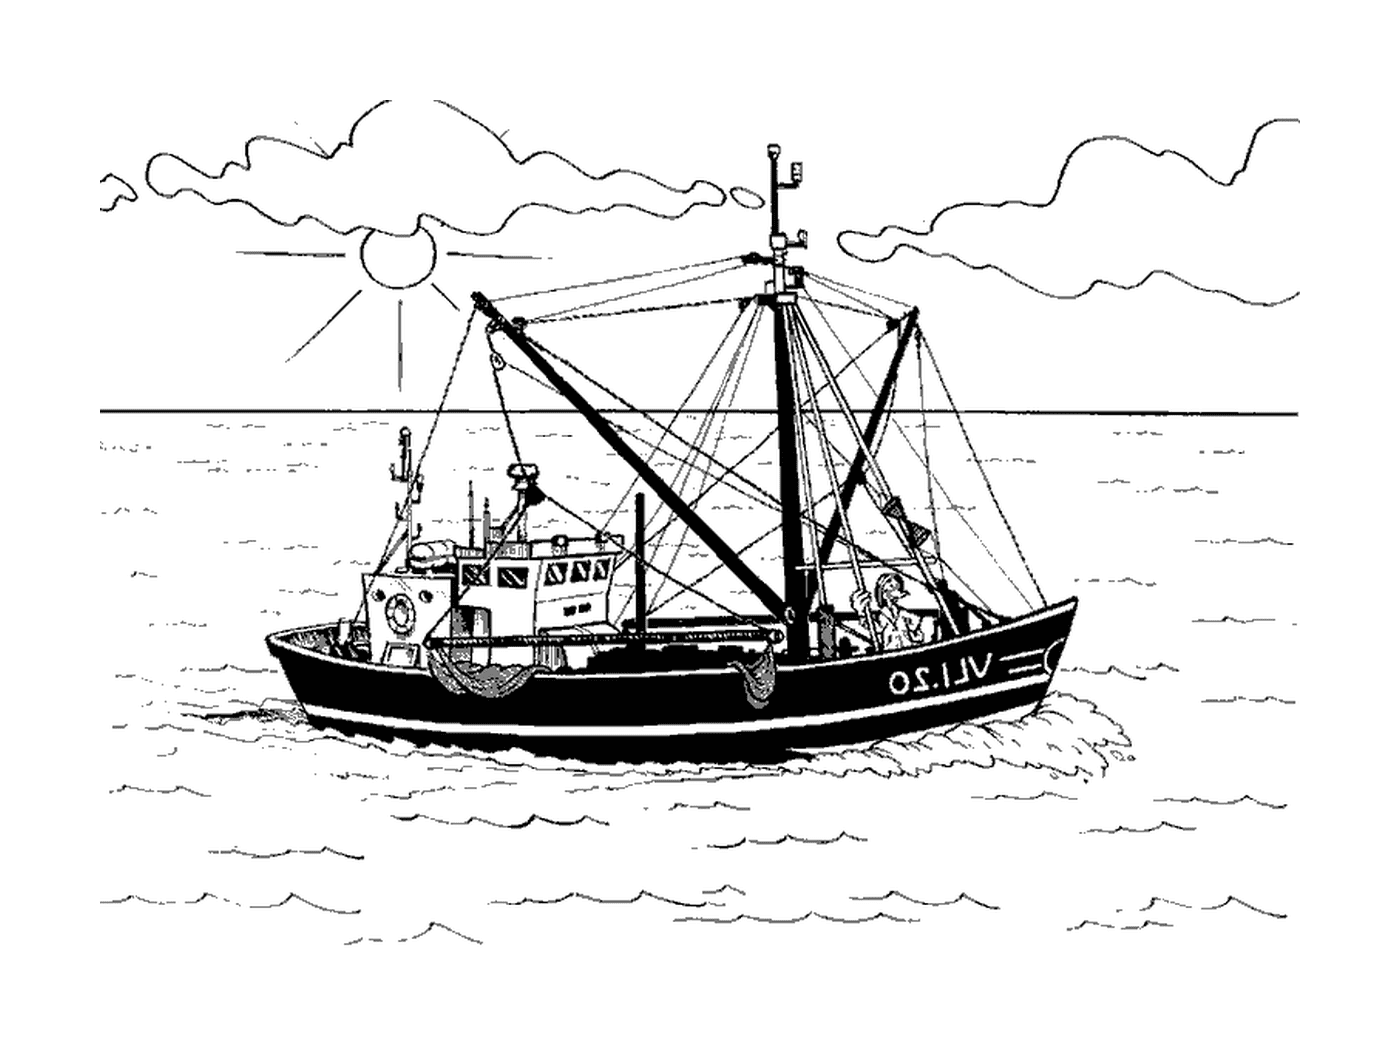  Un arrastrero, barco pesquero 